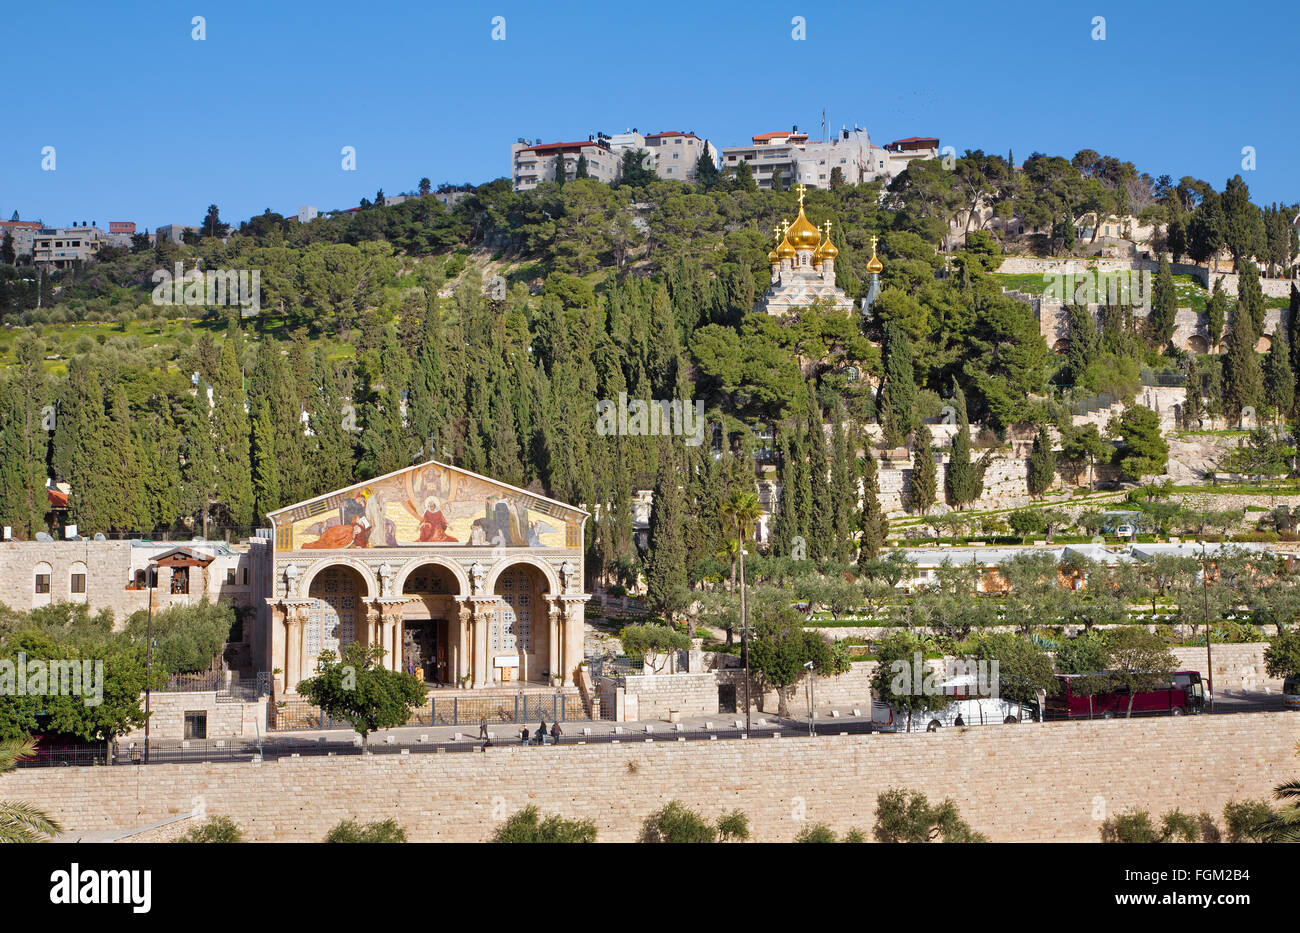 Gerusalemme, Israele - 3 Marzo 2015: Le chiese - Chiesa di tutte le nazioni, Dominus Flevit e la chiesa ortodossa russa Foto Stock